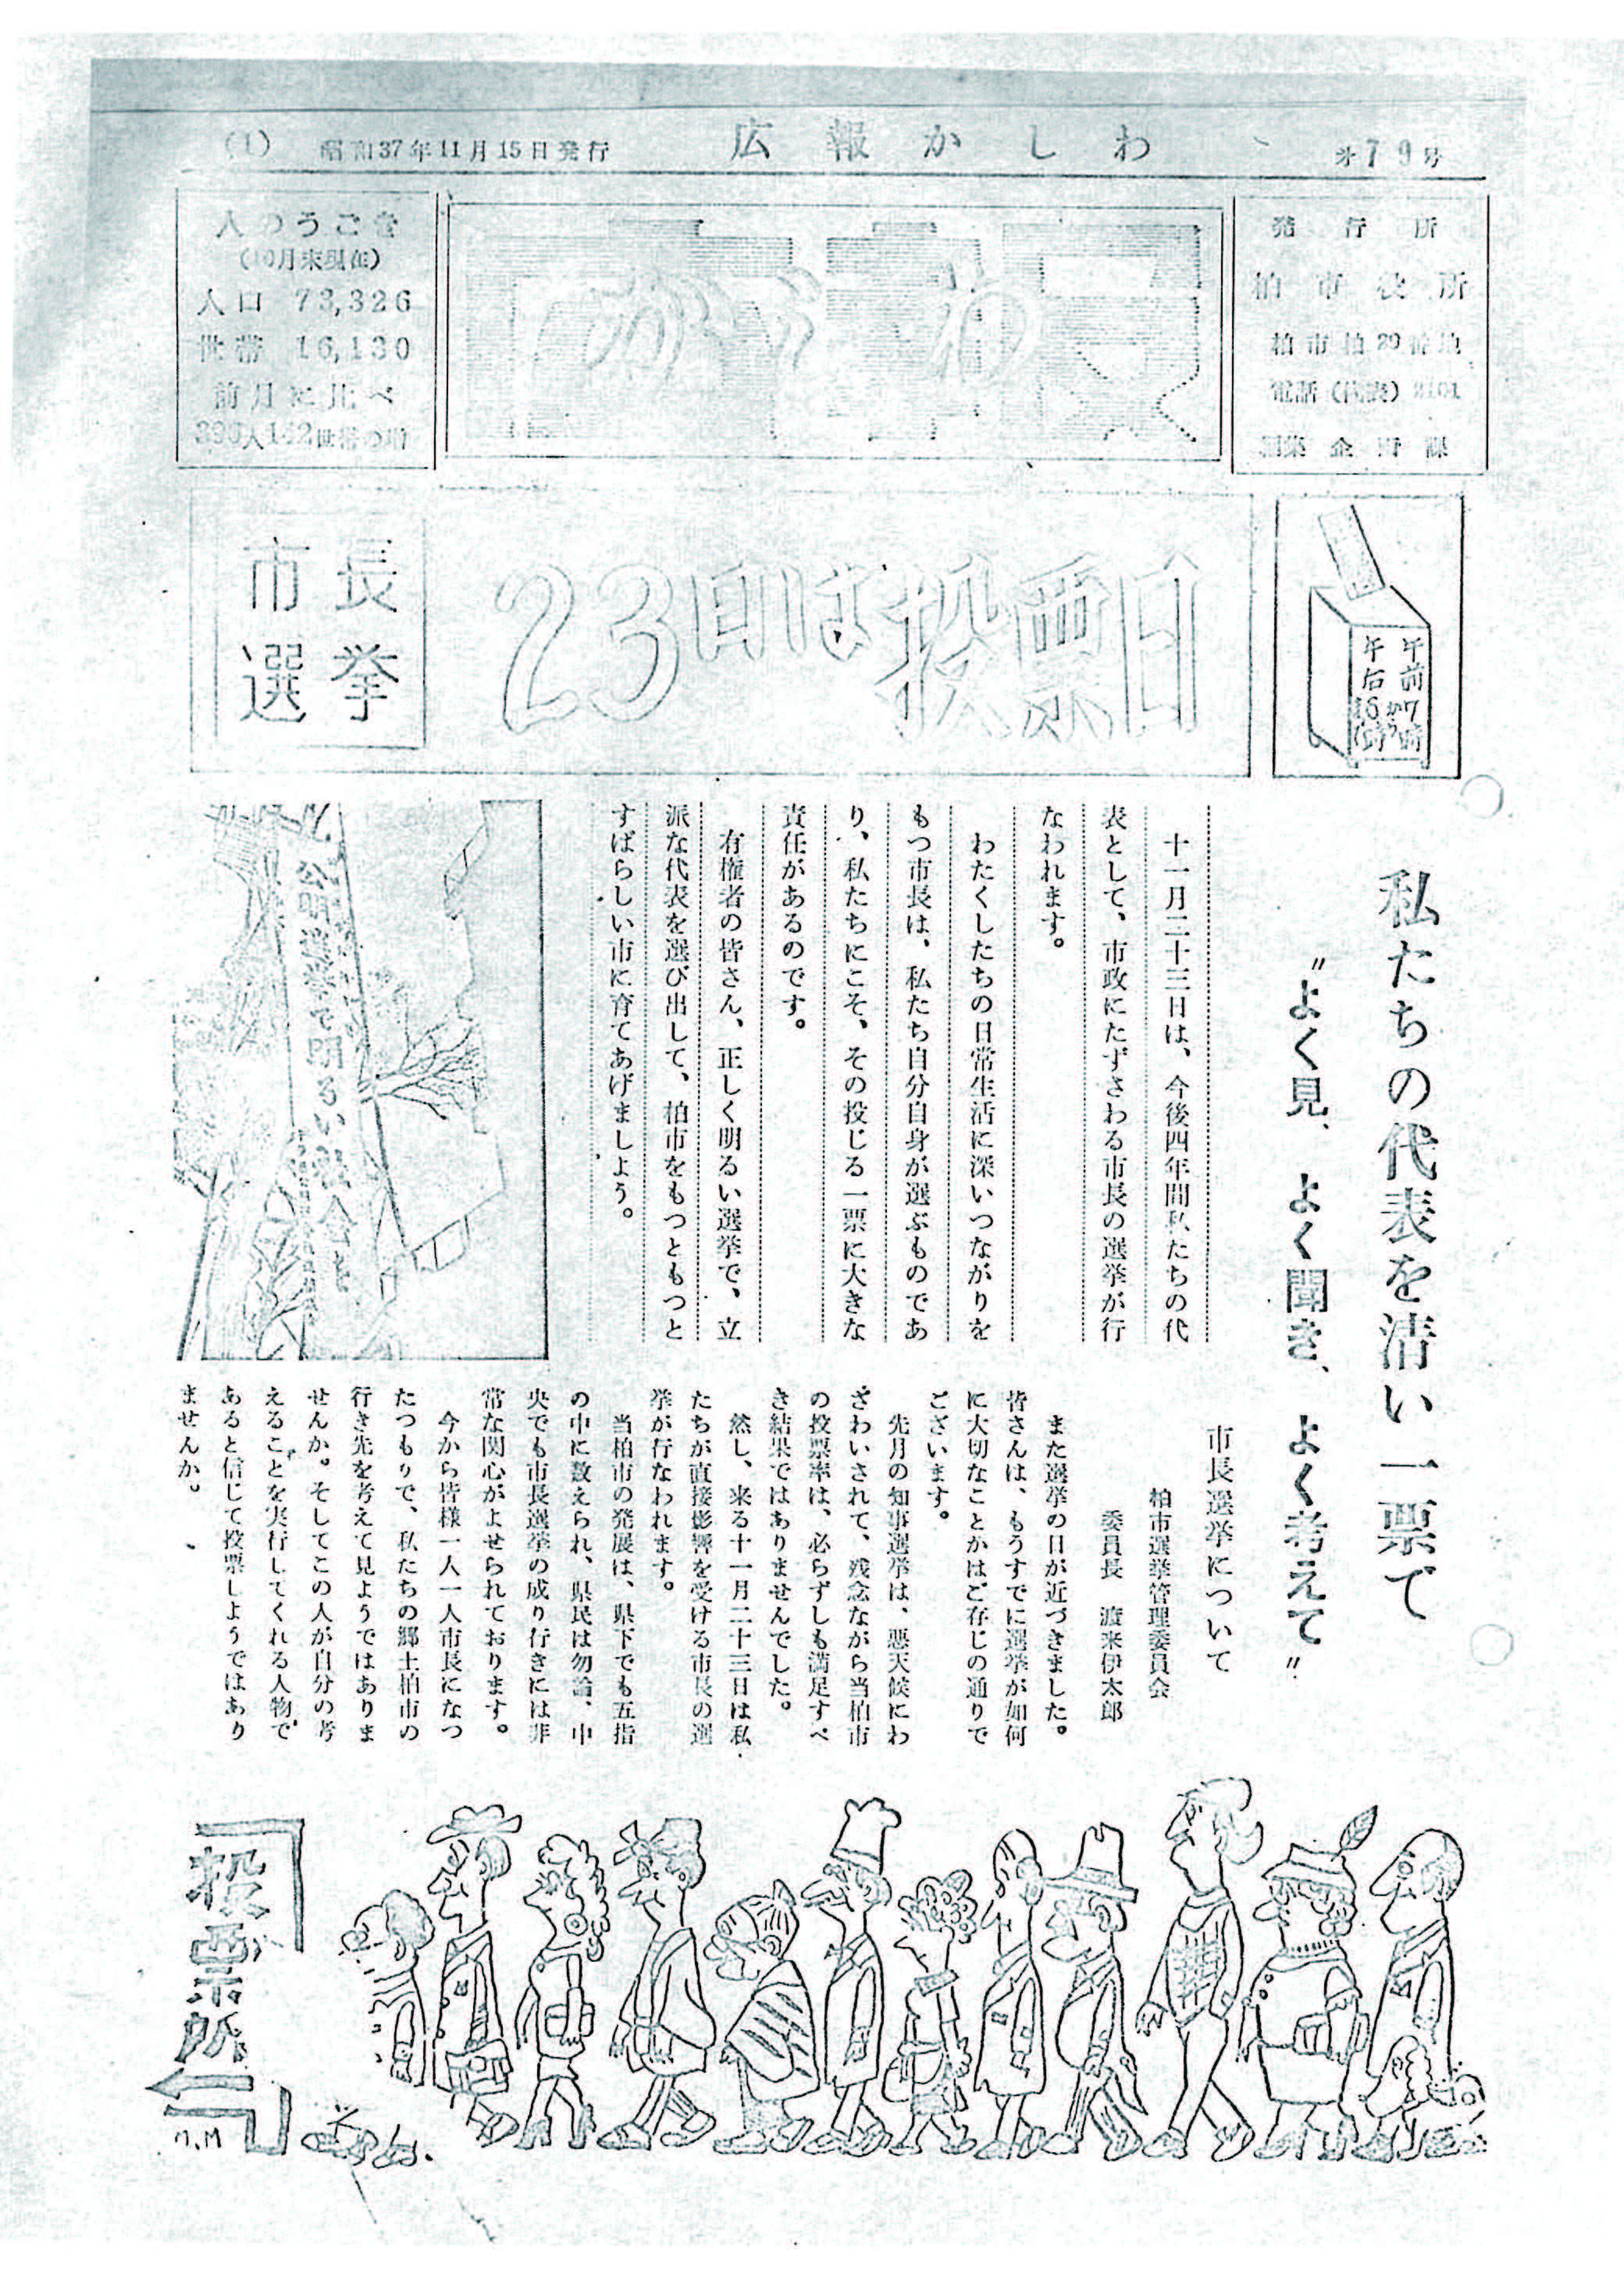 広報かしわ　昭和37年11月15日発行　79号